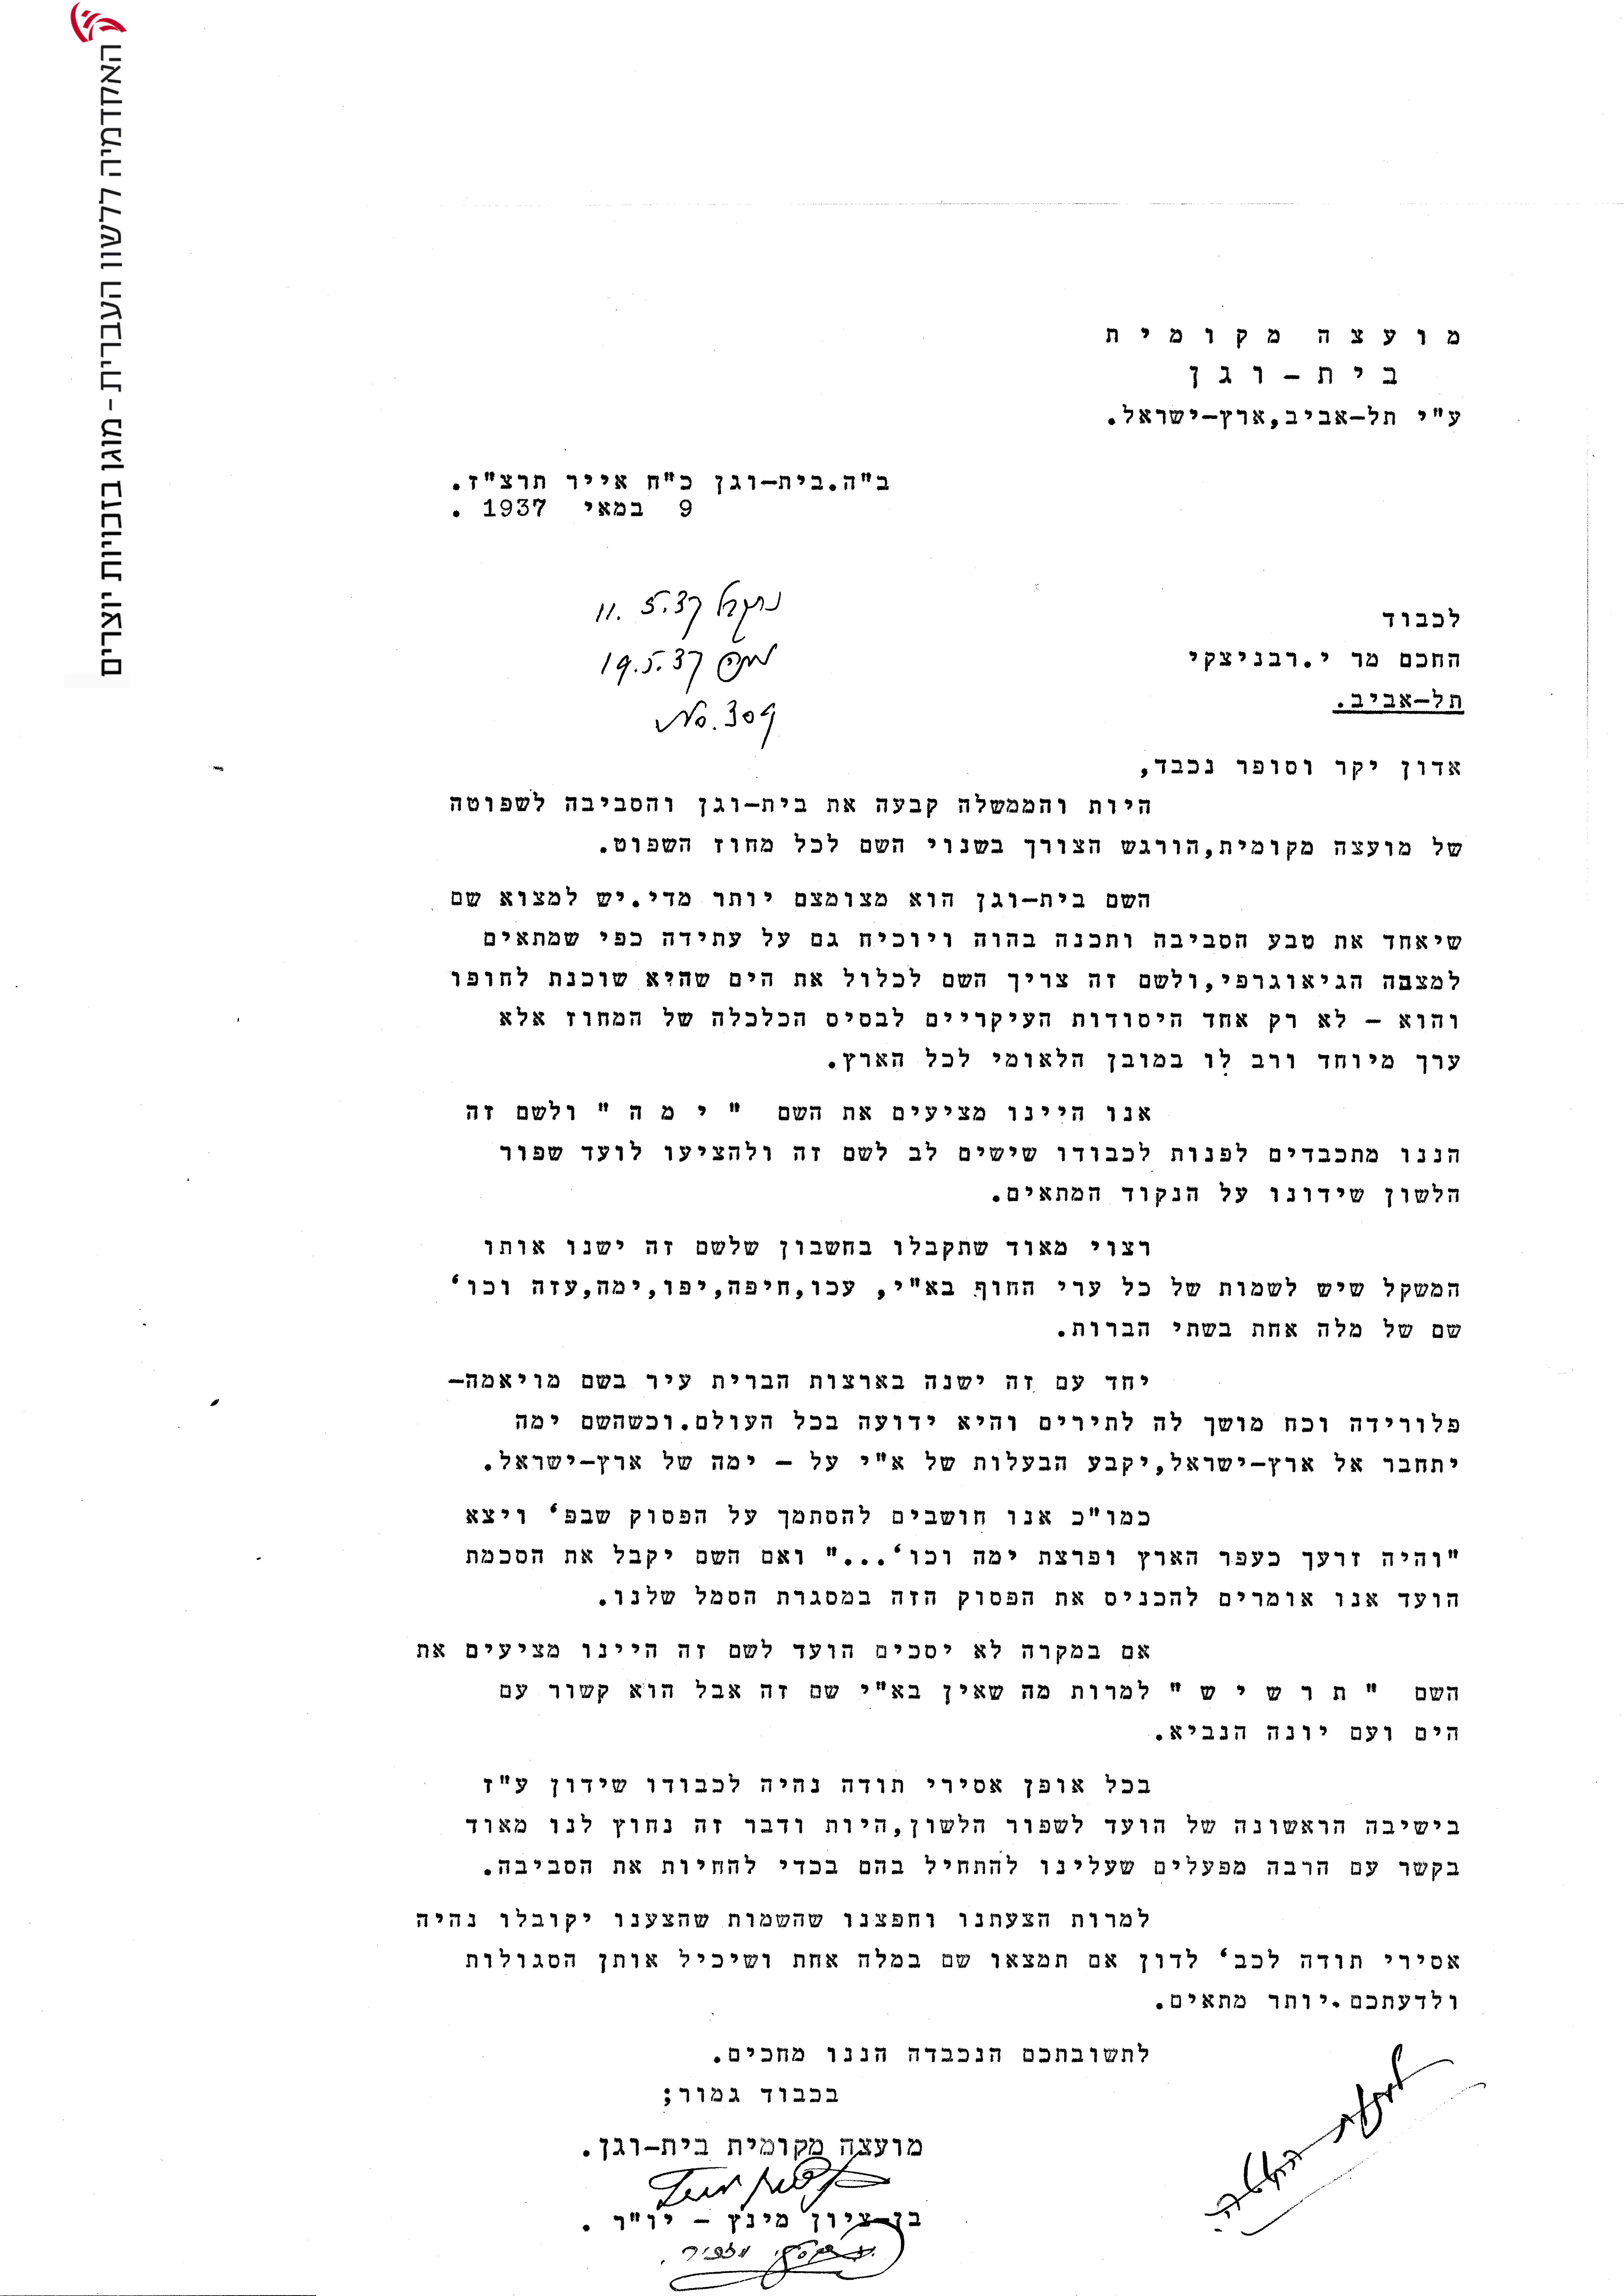 מכתב תשובה לפנייה של נציגי המועצה לועד הלשון בשנת 1937 אודות שמה של העיר "בת ים"